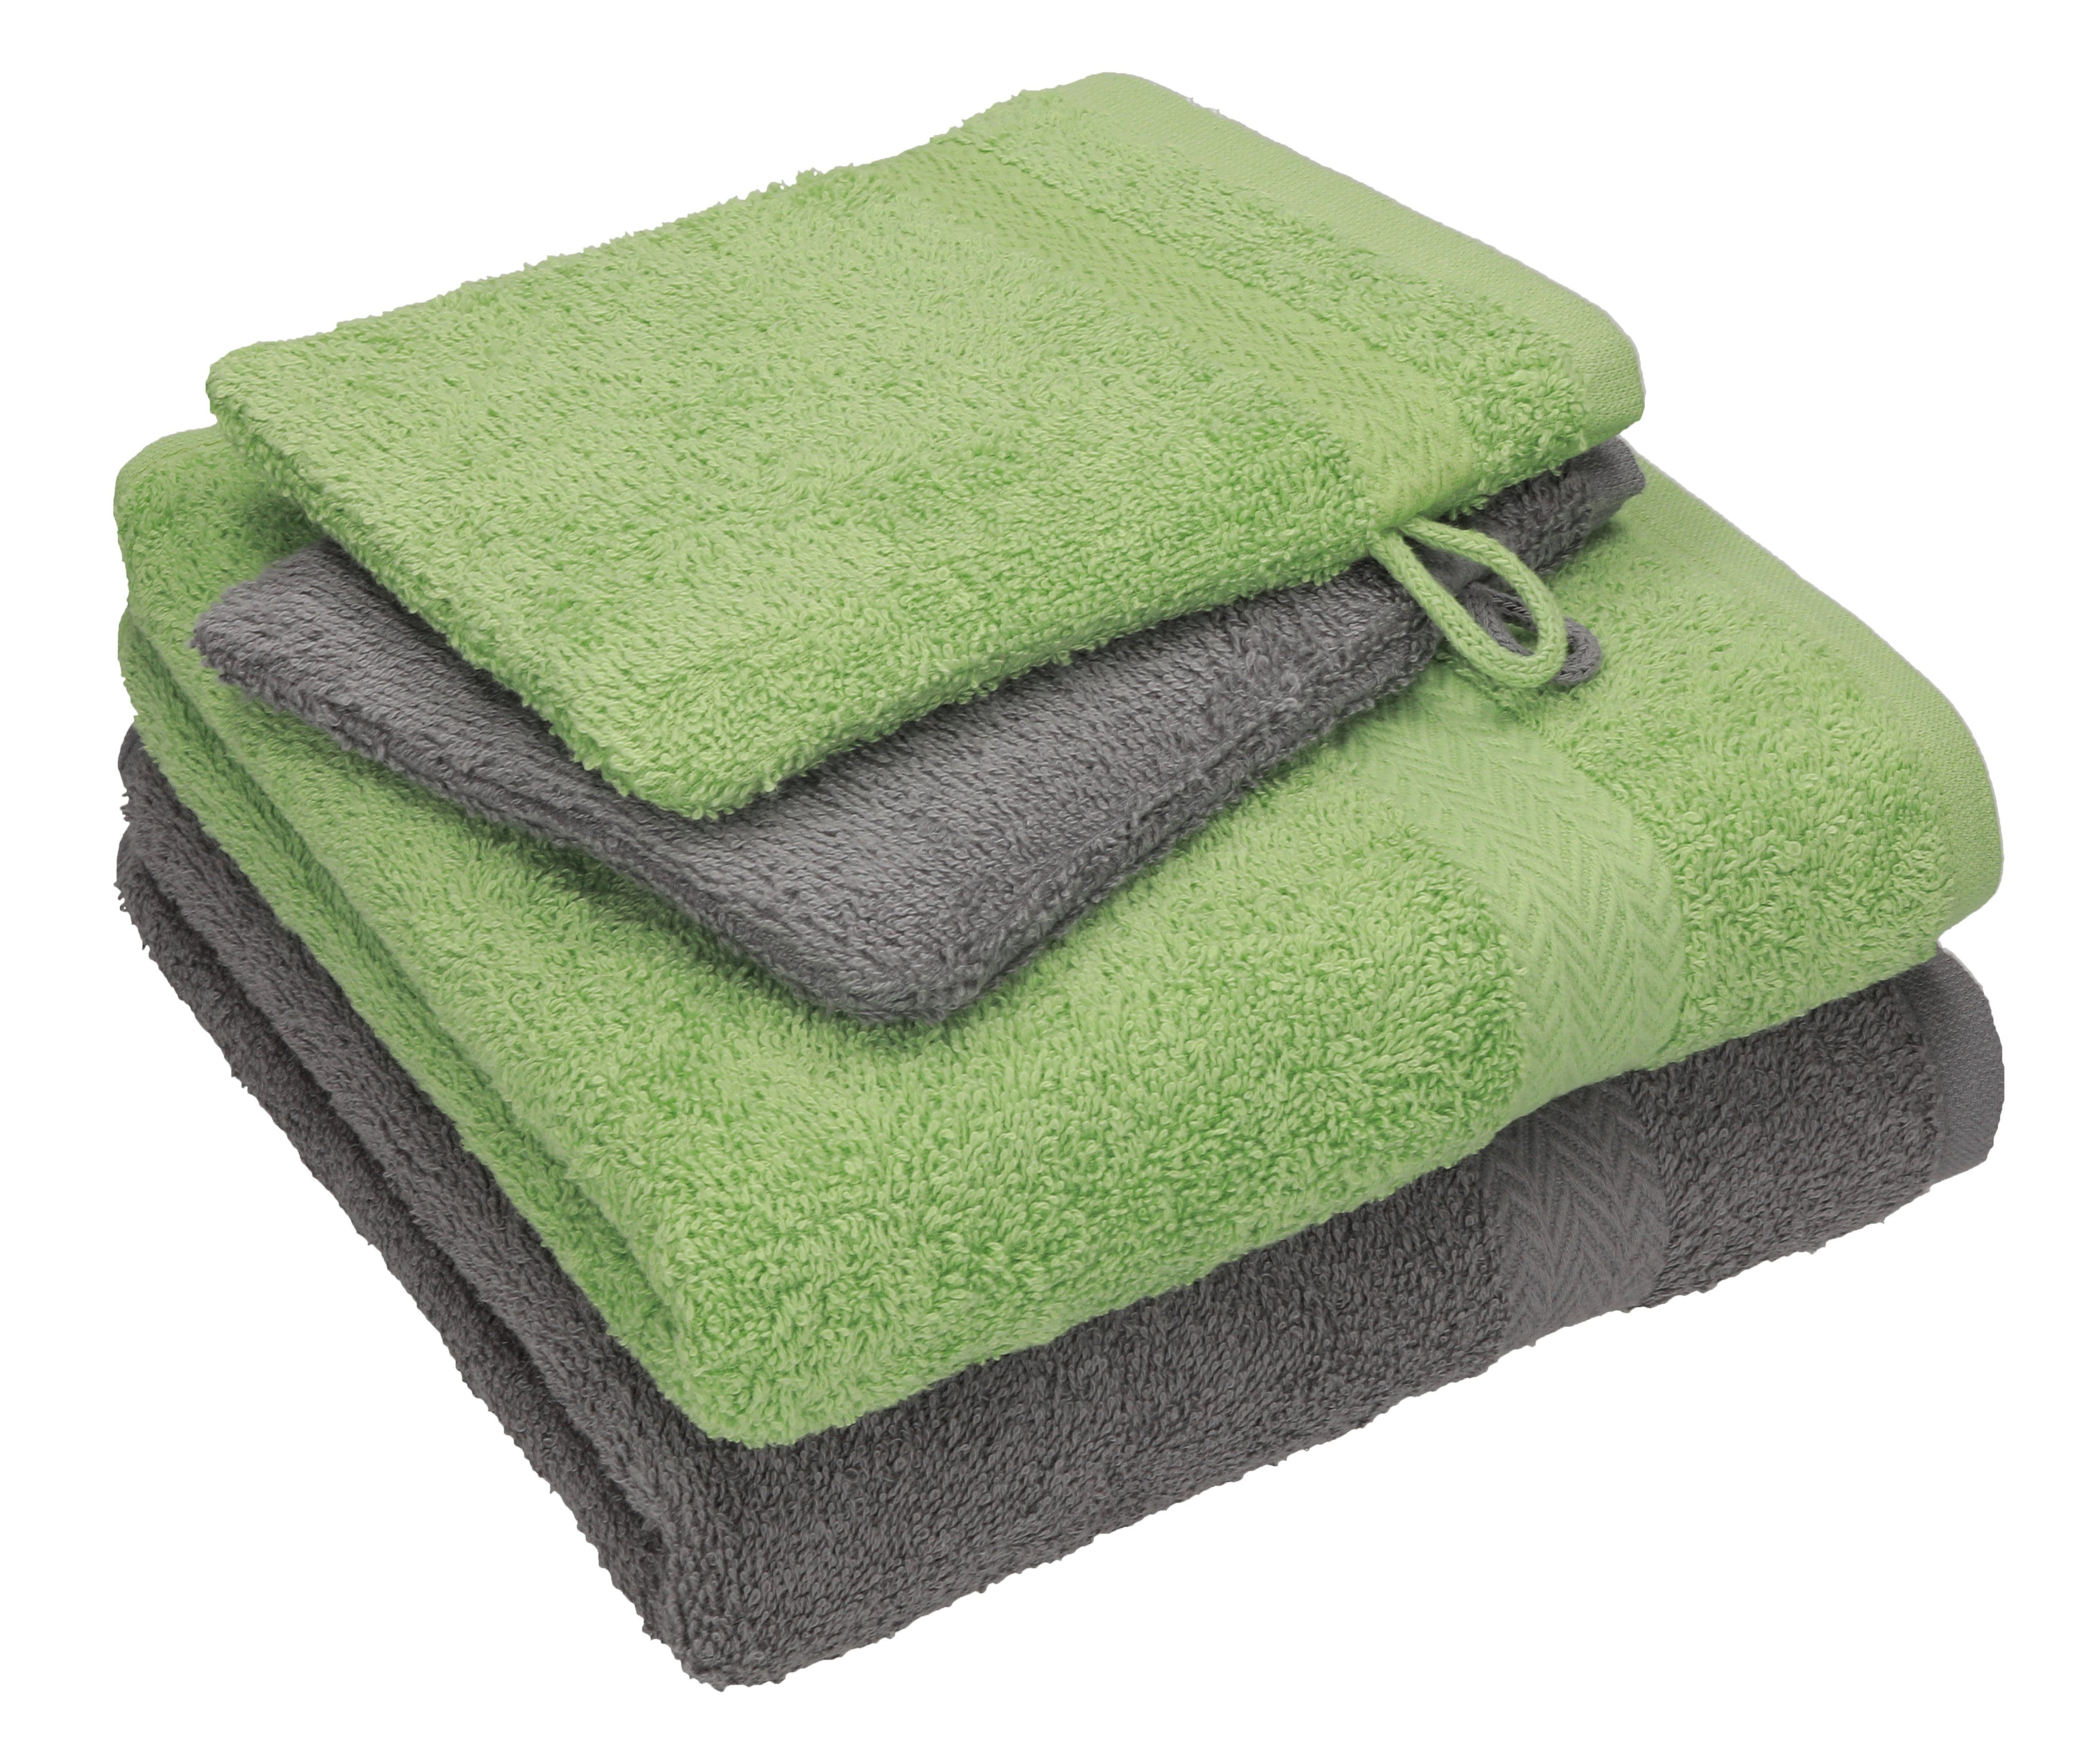 Betz Handtuch Set 4 TLG. Handtuch Set Happy Pack 100% Baumwolle 2 Handtücher 2 Waschhandschuhe, 100% Baumwolle anthrazit grau - apfelgrün